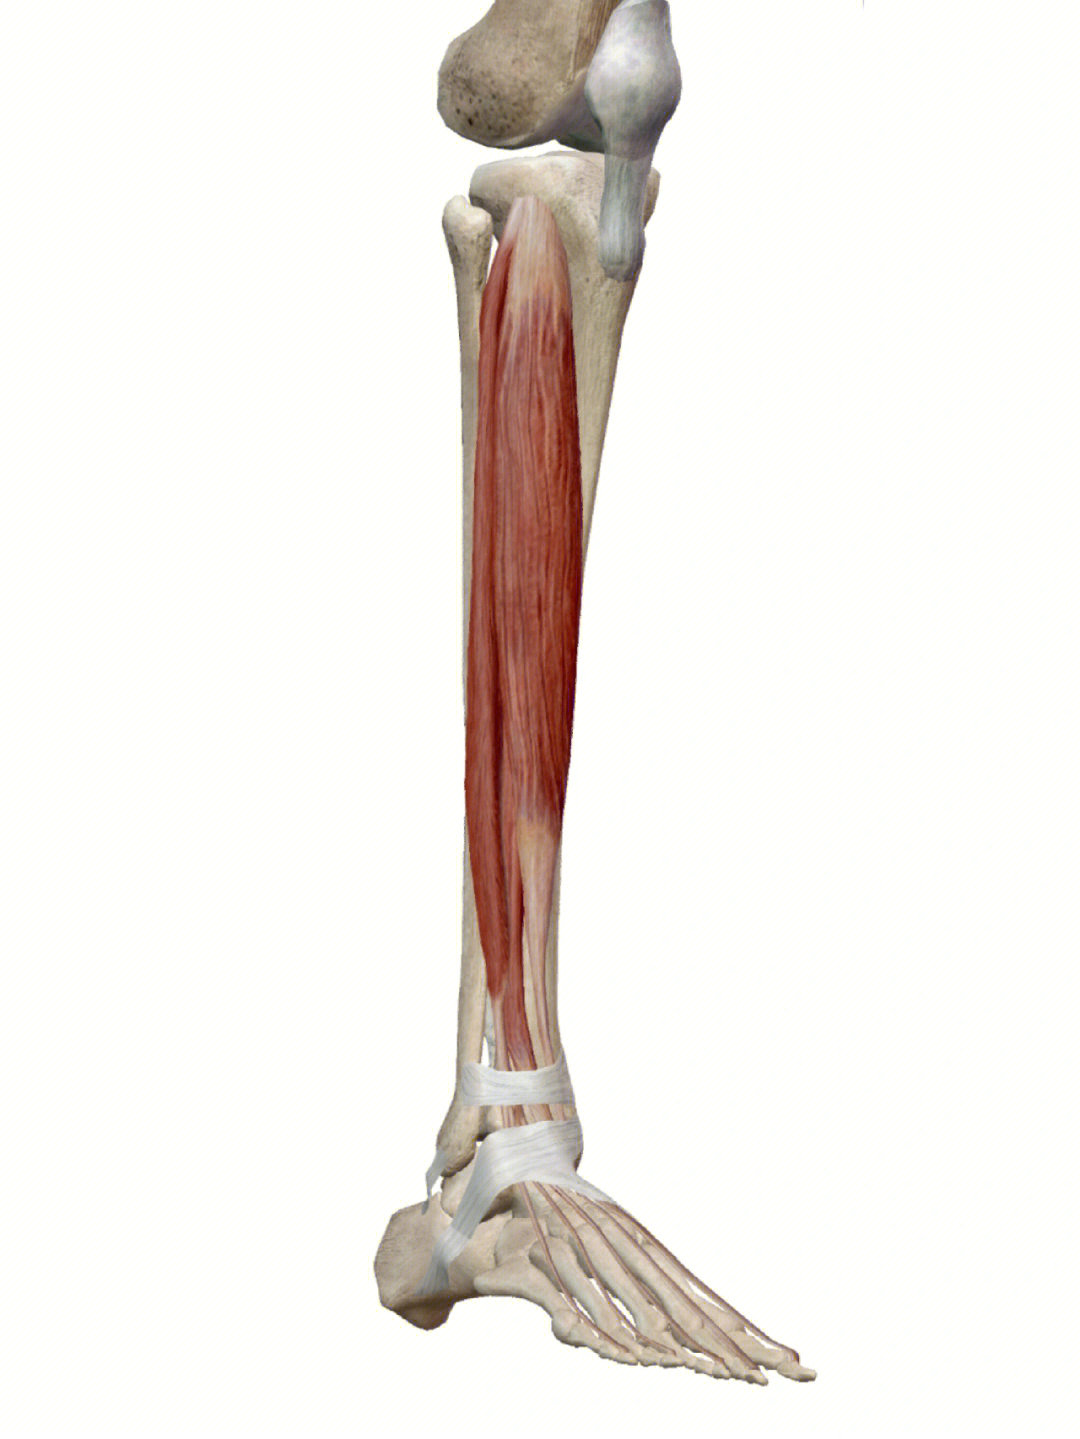 98《骨骼肌肉功能解剖学》8215胫骨前肌:胫腓骨上端骨间膜前面